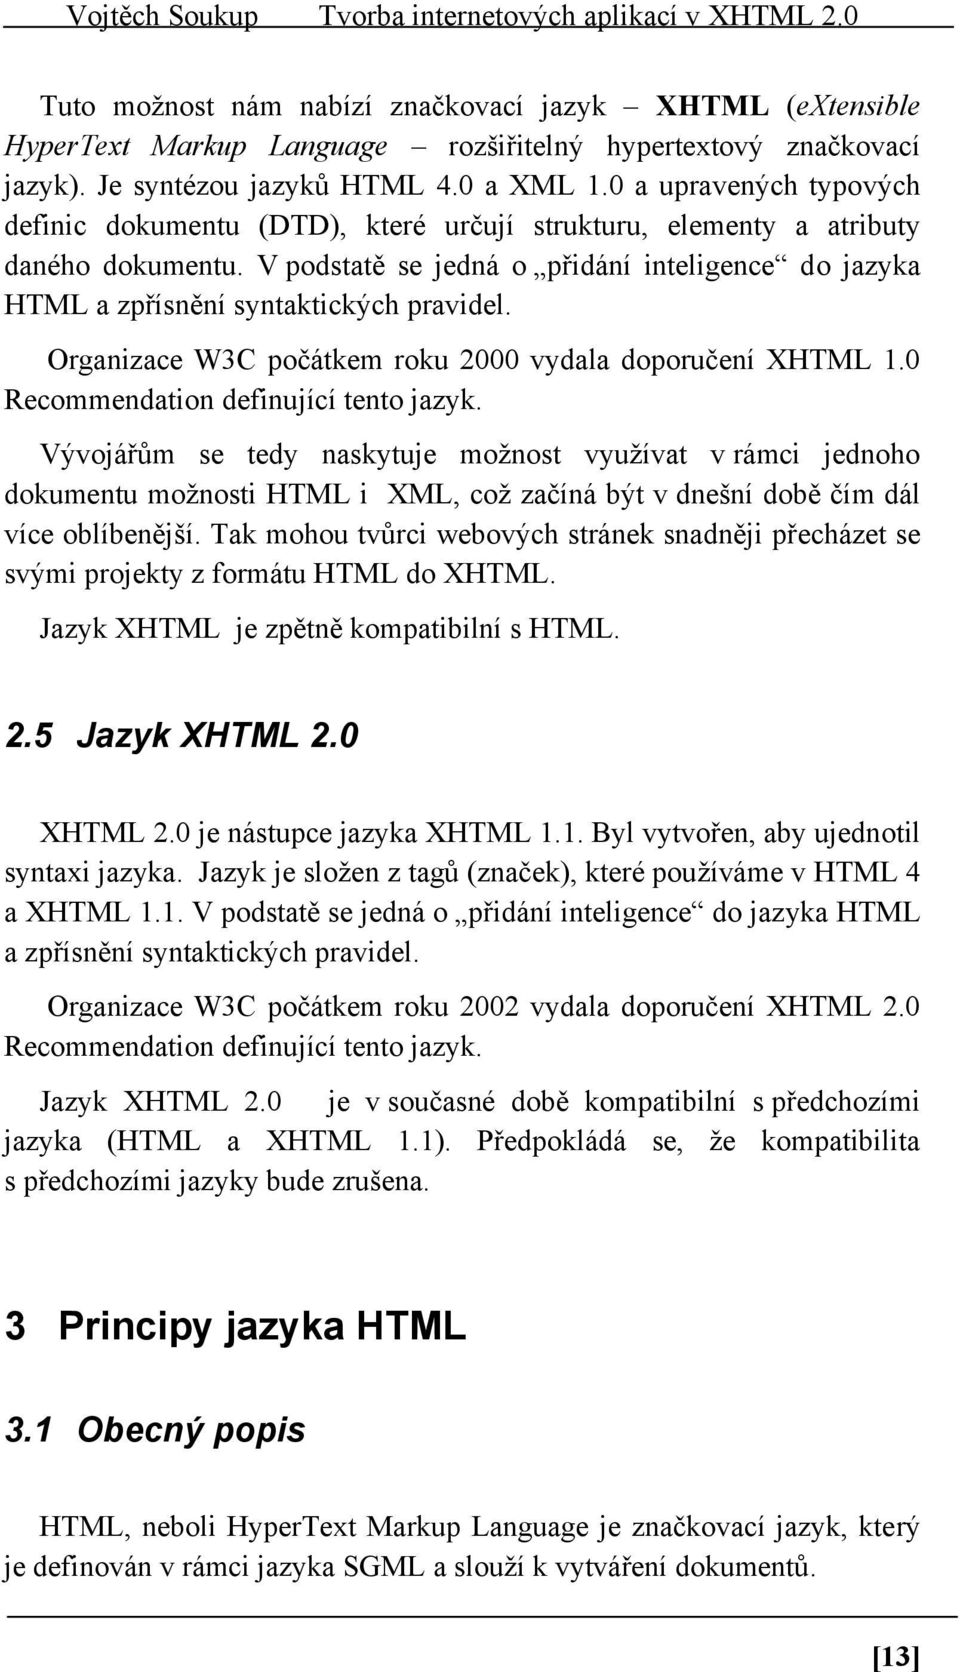 V podstatě se jedná o přidání inteligence do jazyka HTML a zpřísnění syntaktických pravidel. Organizace W3C počátkem roku 2000 vydala doporučení XHTML 1.0 Recommendation definující tento jazyk.